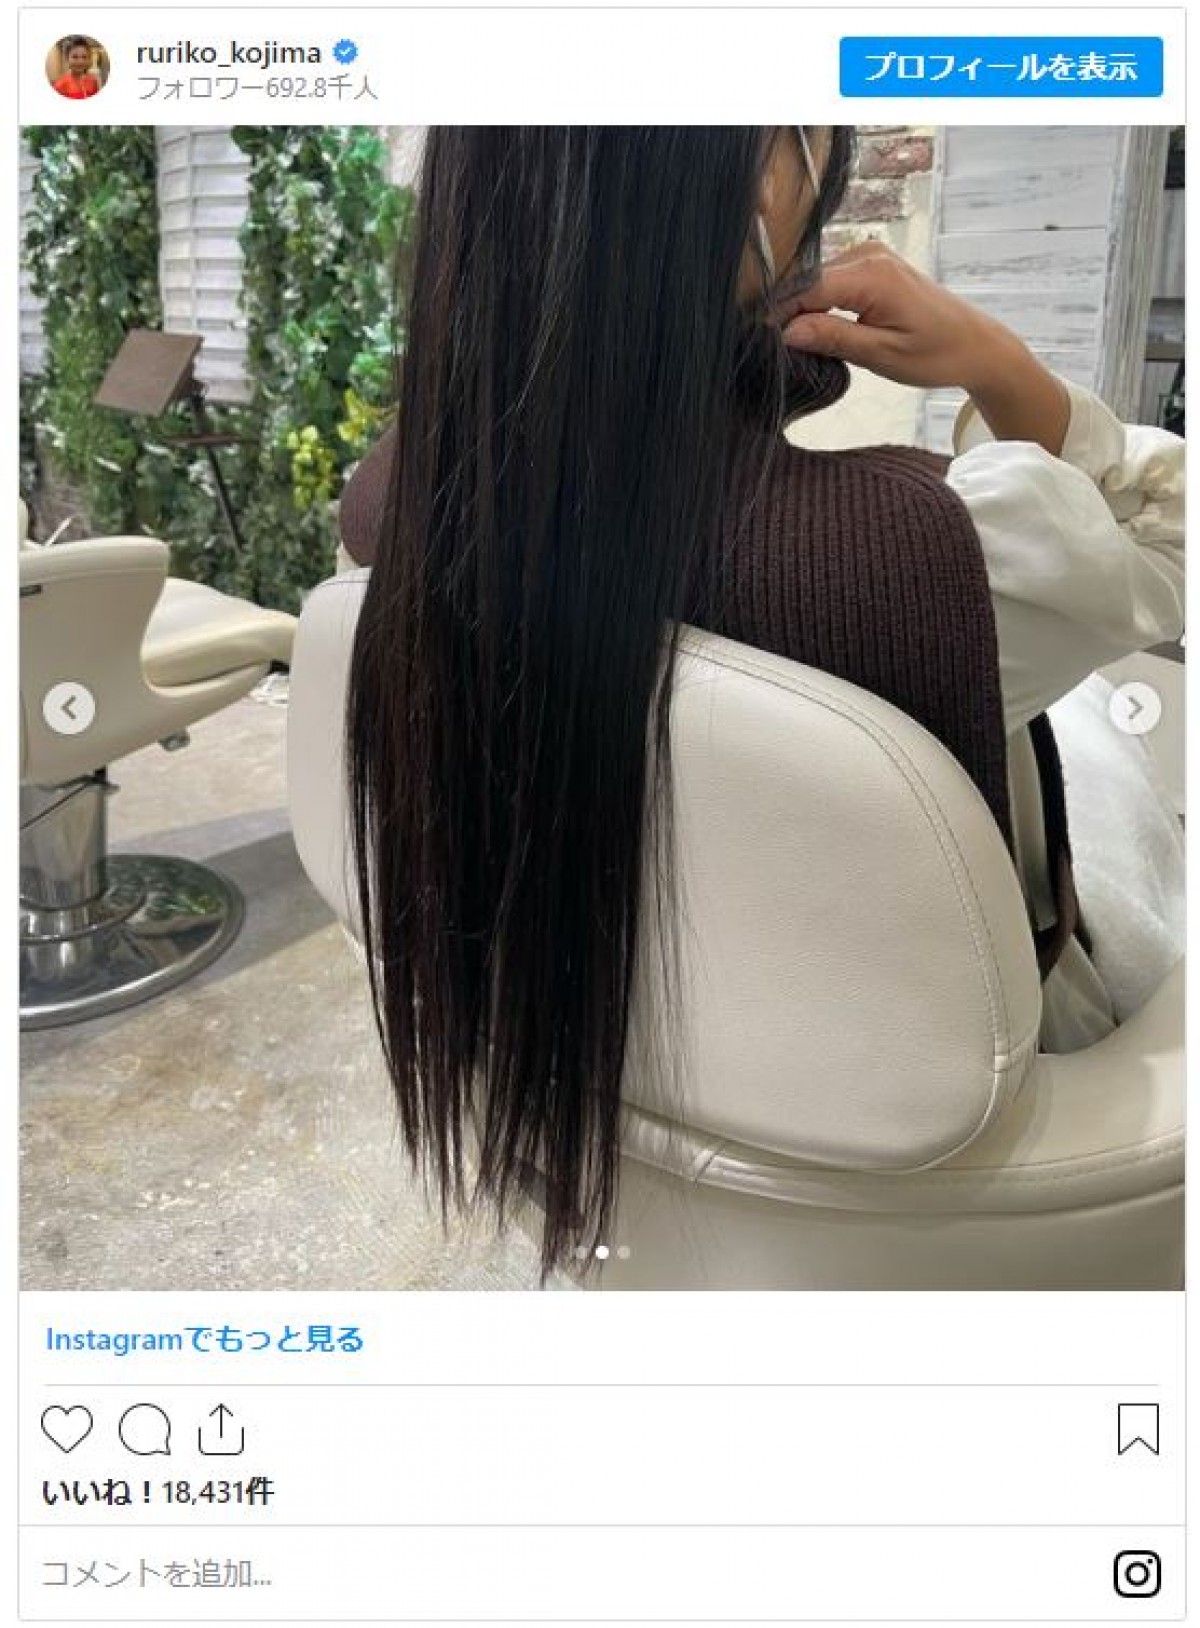 小島瑠璃子「4.5年ぶりに髪を切りました」30cm超ばっさりカットした姿を公開